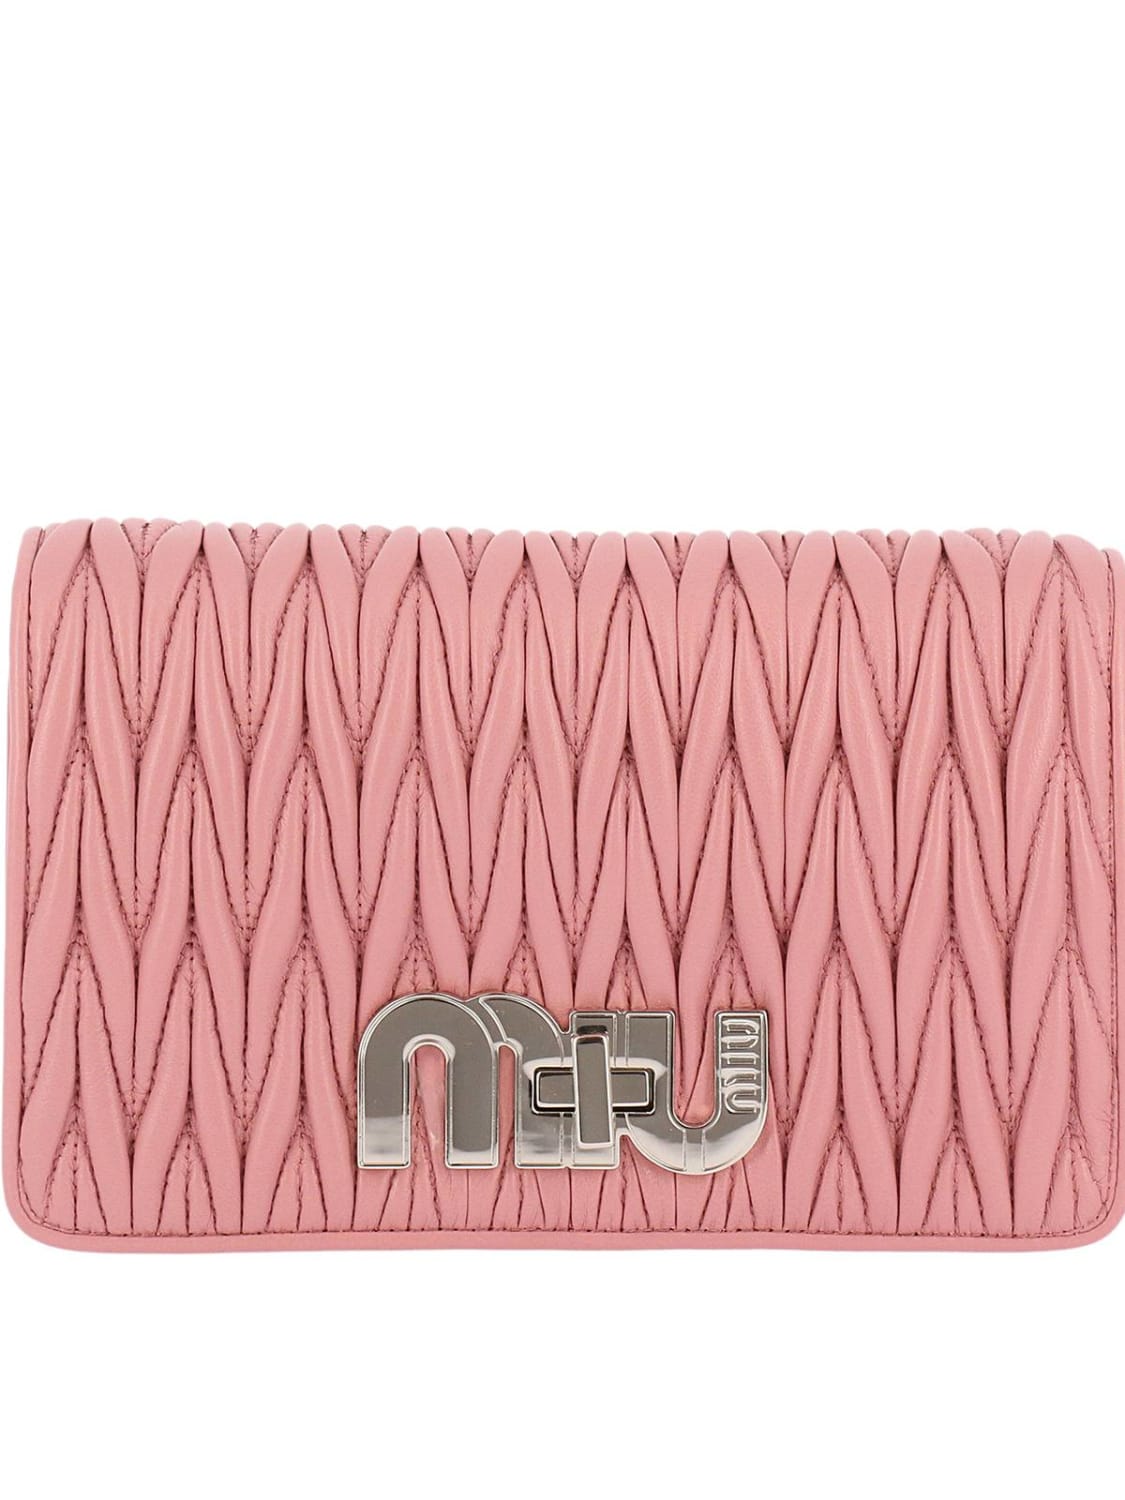 Mini bag Miu Miu: Miu Miu mini bag for women pink 2